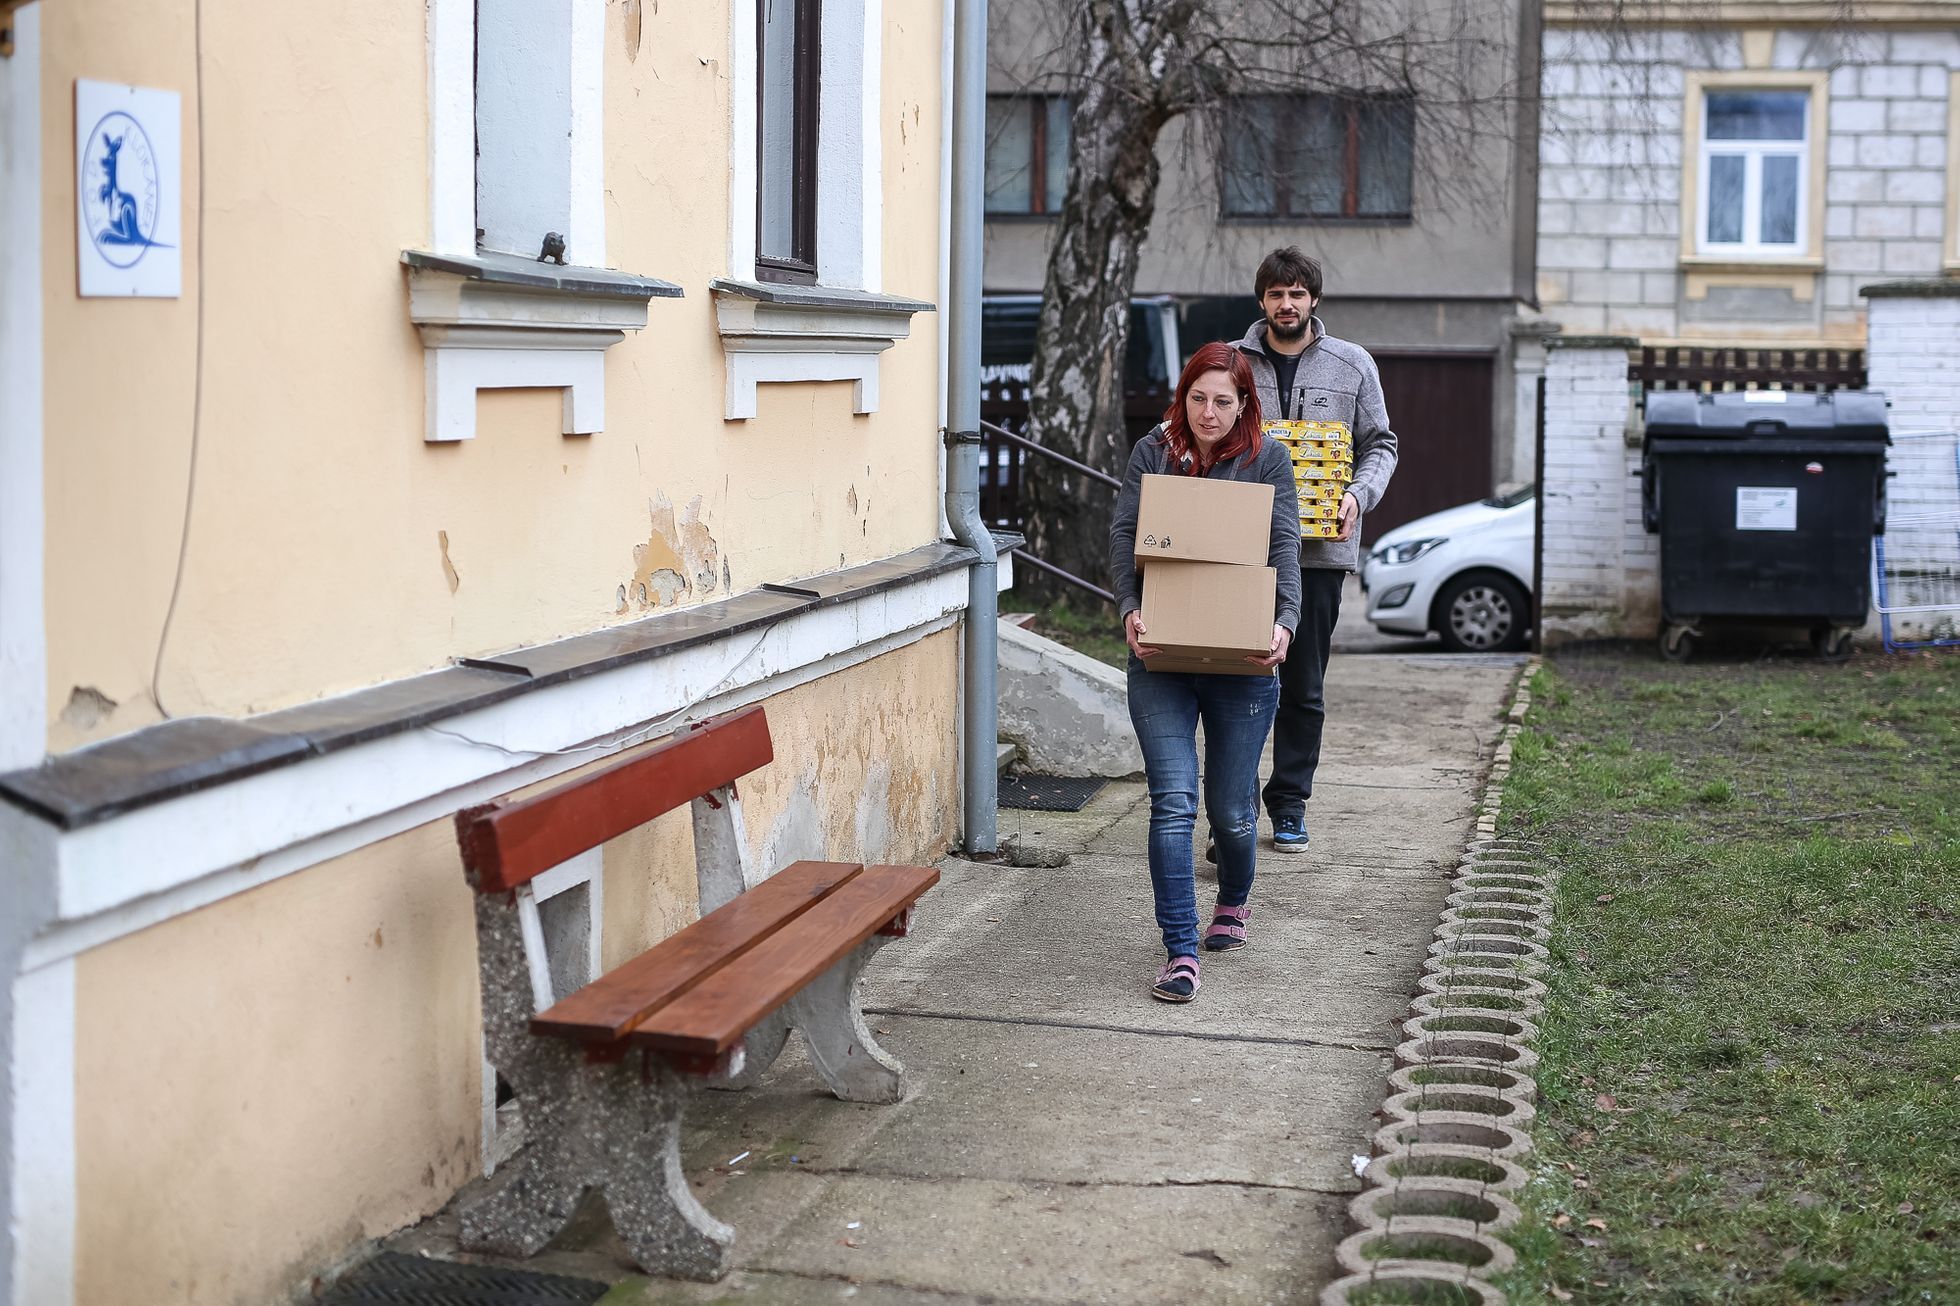 Potravinová banka Ústí nad Labem - rozdávání pomoci z Makro a Globus v Klokánku a Azylovém domě pro matky s dětmi